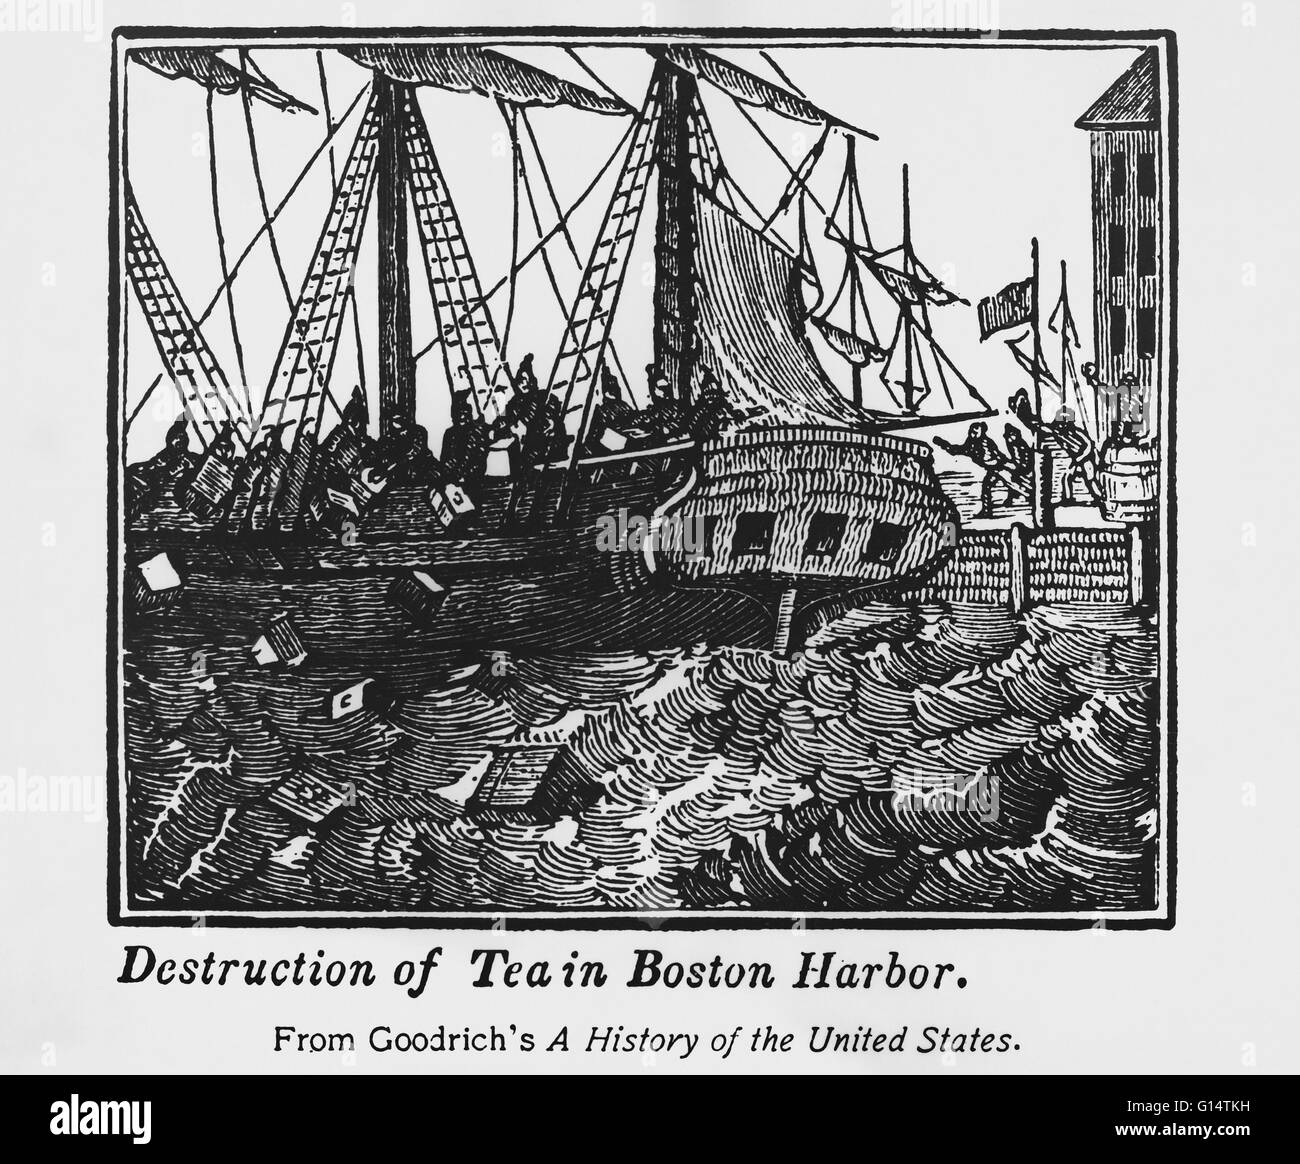 Le Boston Tea Party a été une action directe par les colons à Boston, une ville dans la colonie britannique du Massachusetts, contre le gouvernement britannique et l'East India Company qui contrôlaient tout le plateau importés dans les colonies. Le 16 décembre 1773, après l'o Banque D'Images